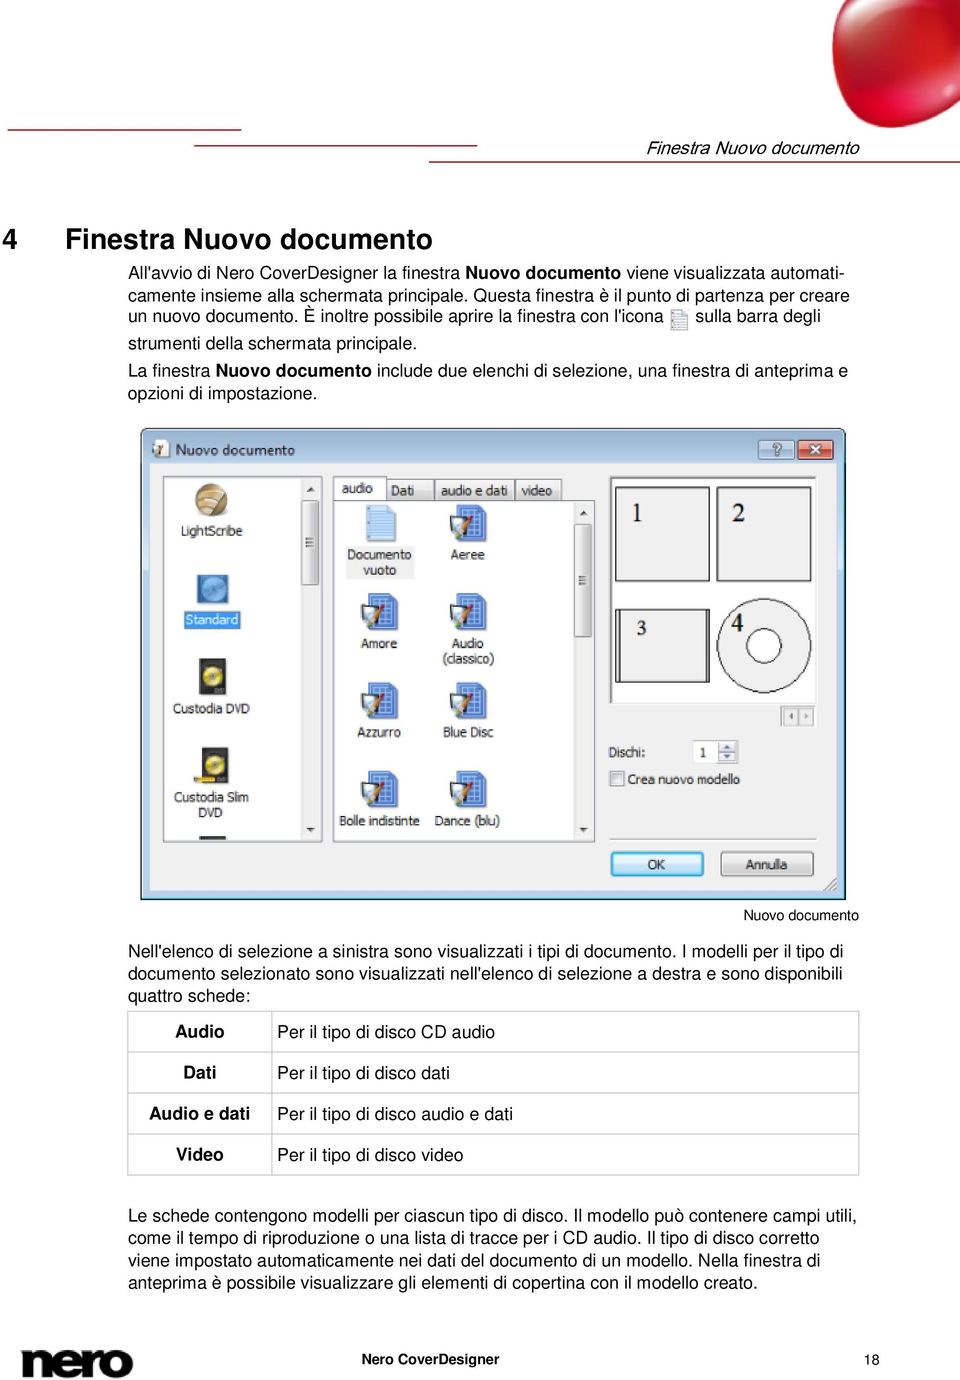 La finestra Nuovo documento include due elenchi di selezione, una finestra di anteprima e opzioni di impostazione.